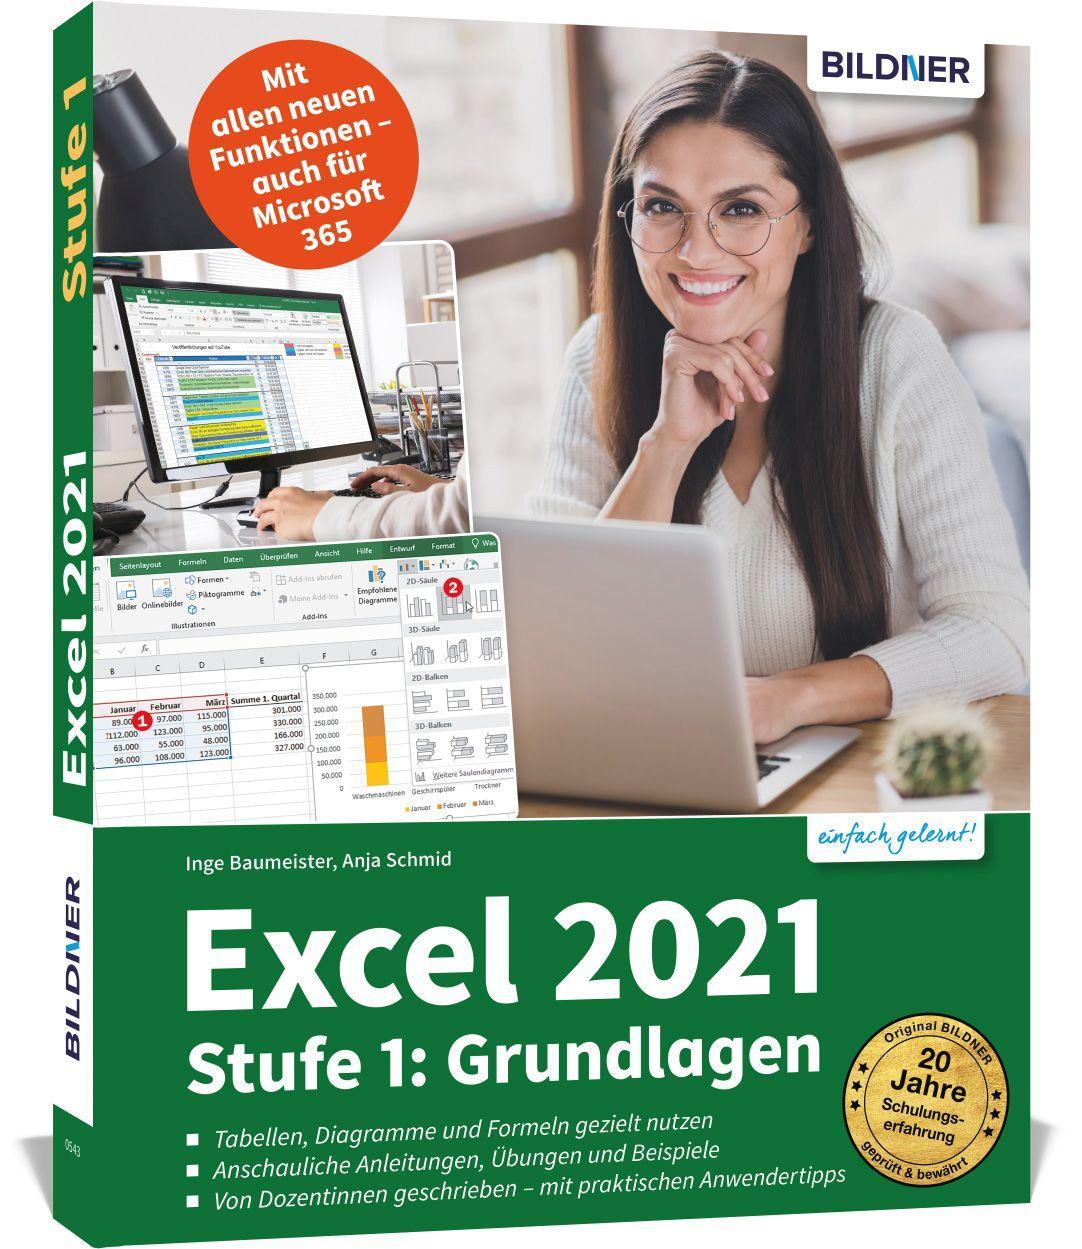 Carte Excel 2021 - Stufe 1: Grundlagen Inge Baumeister